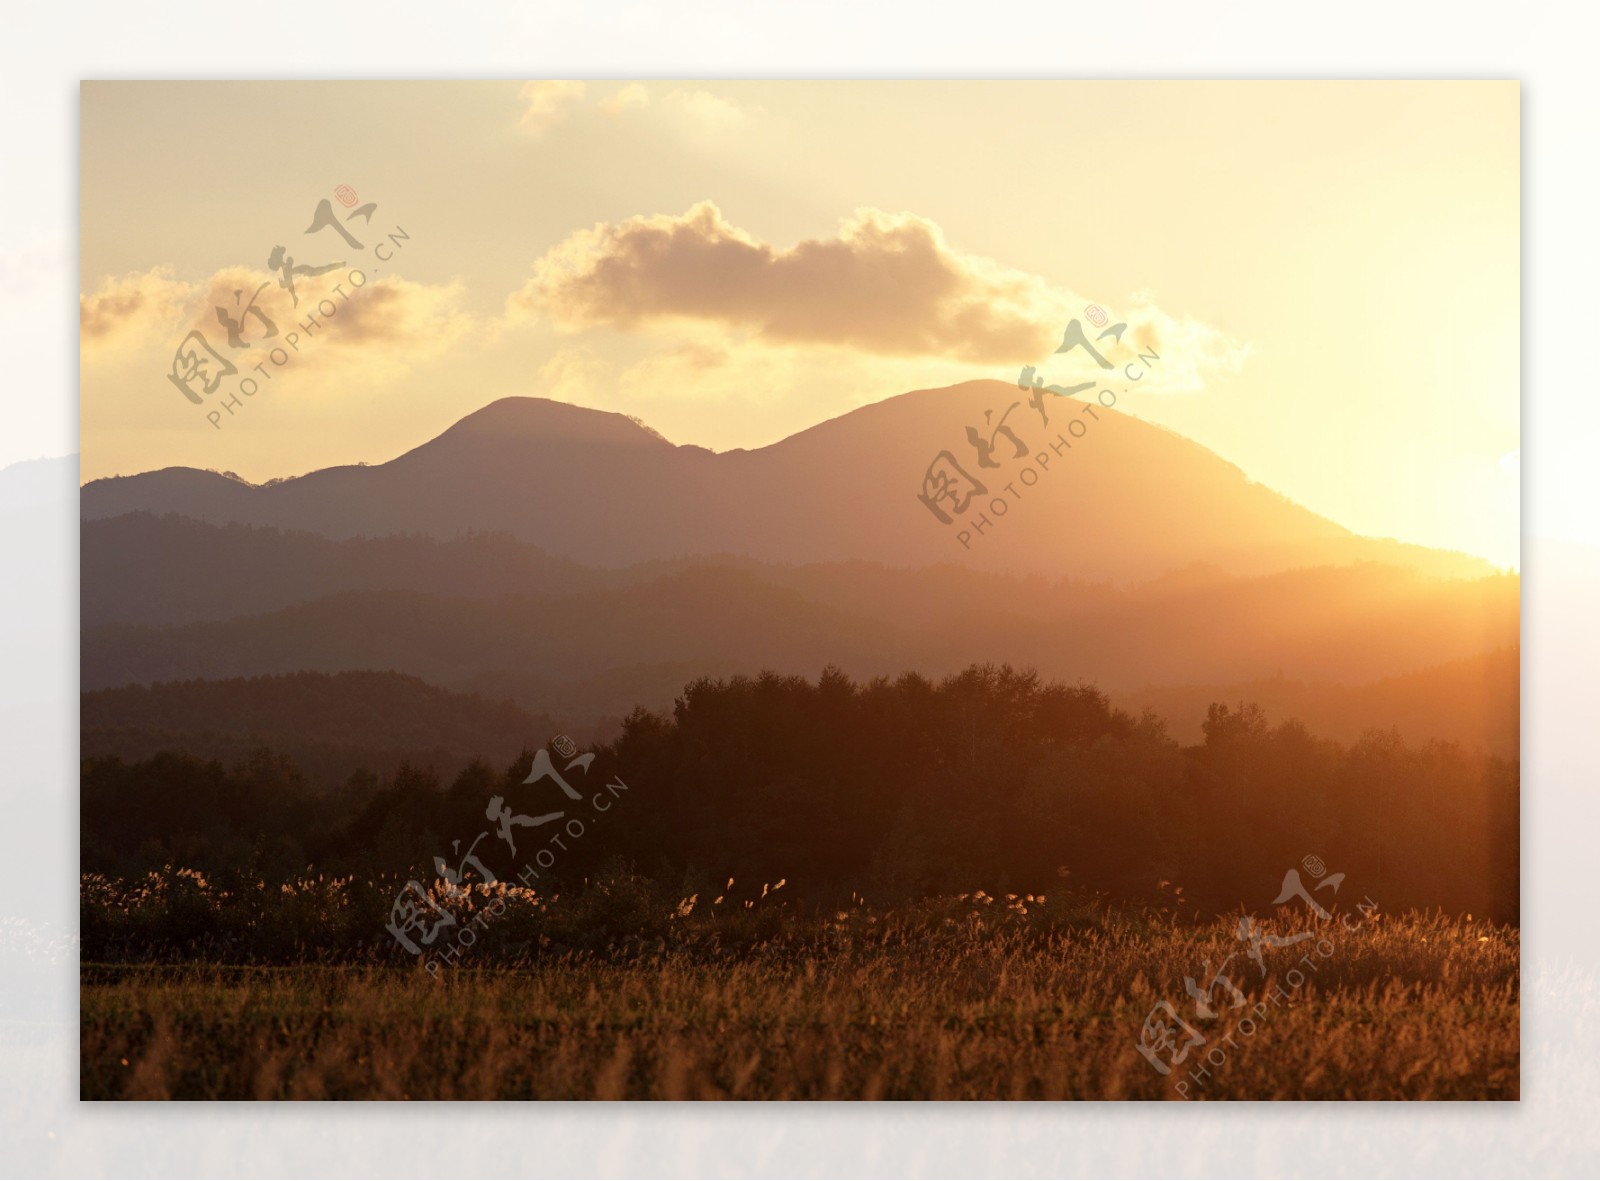 美丽草原黄昏风景图片